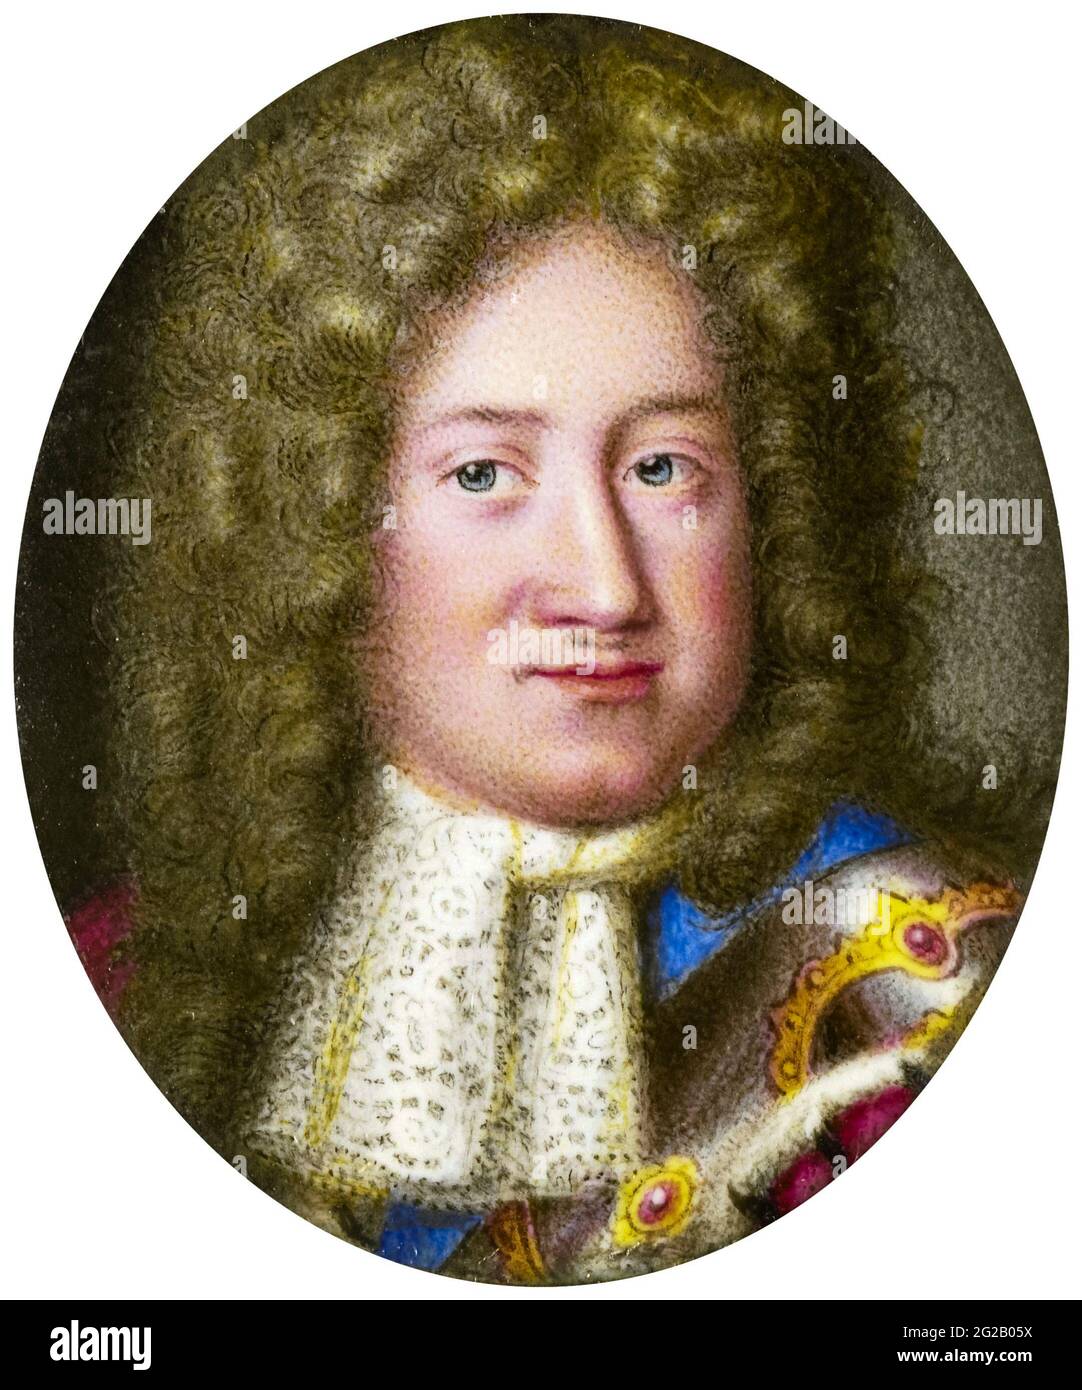 Federico i (1657-1713) Elettore di Brandeburgo e Duca di Prussia (1688-1713) (Federico III), poi Re di Prussia (1701-1713), ritratto in miniatura di Samuel Blesendorf, 1677-1706 Foto Stock